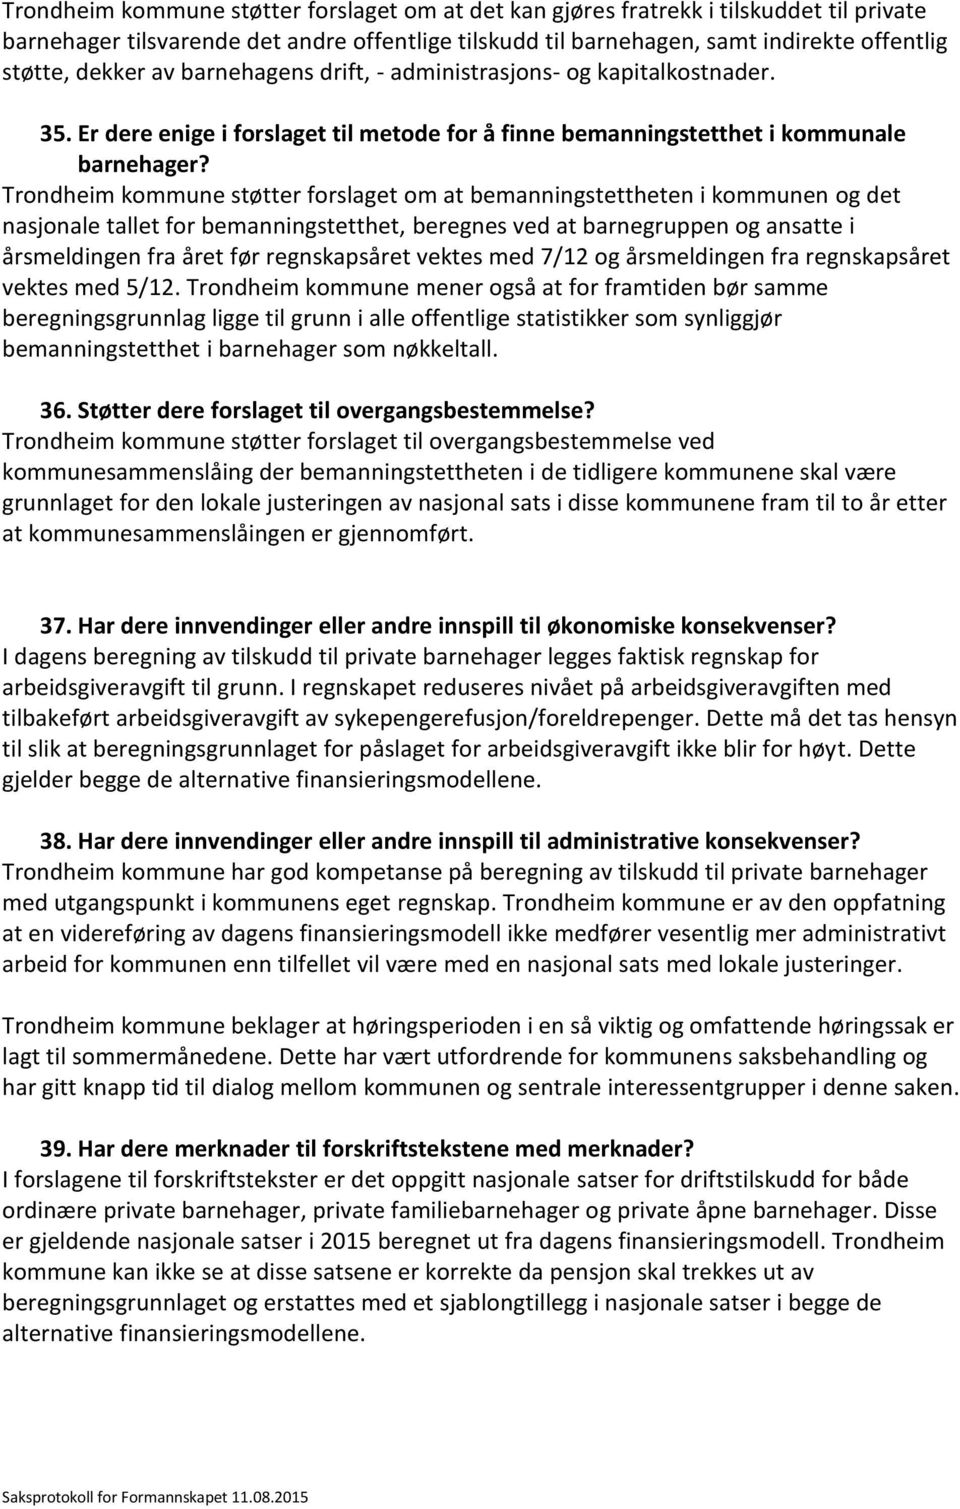 Trondheim kommune støtter forslaget om at bemanningstettheten i kommunen og det nasjonale tallet for bemanningstetthet, beregnes ved at barnegruppen og ansatte i årsmeldingen fra året før